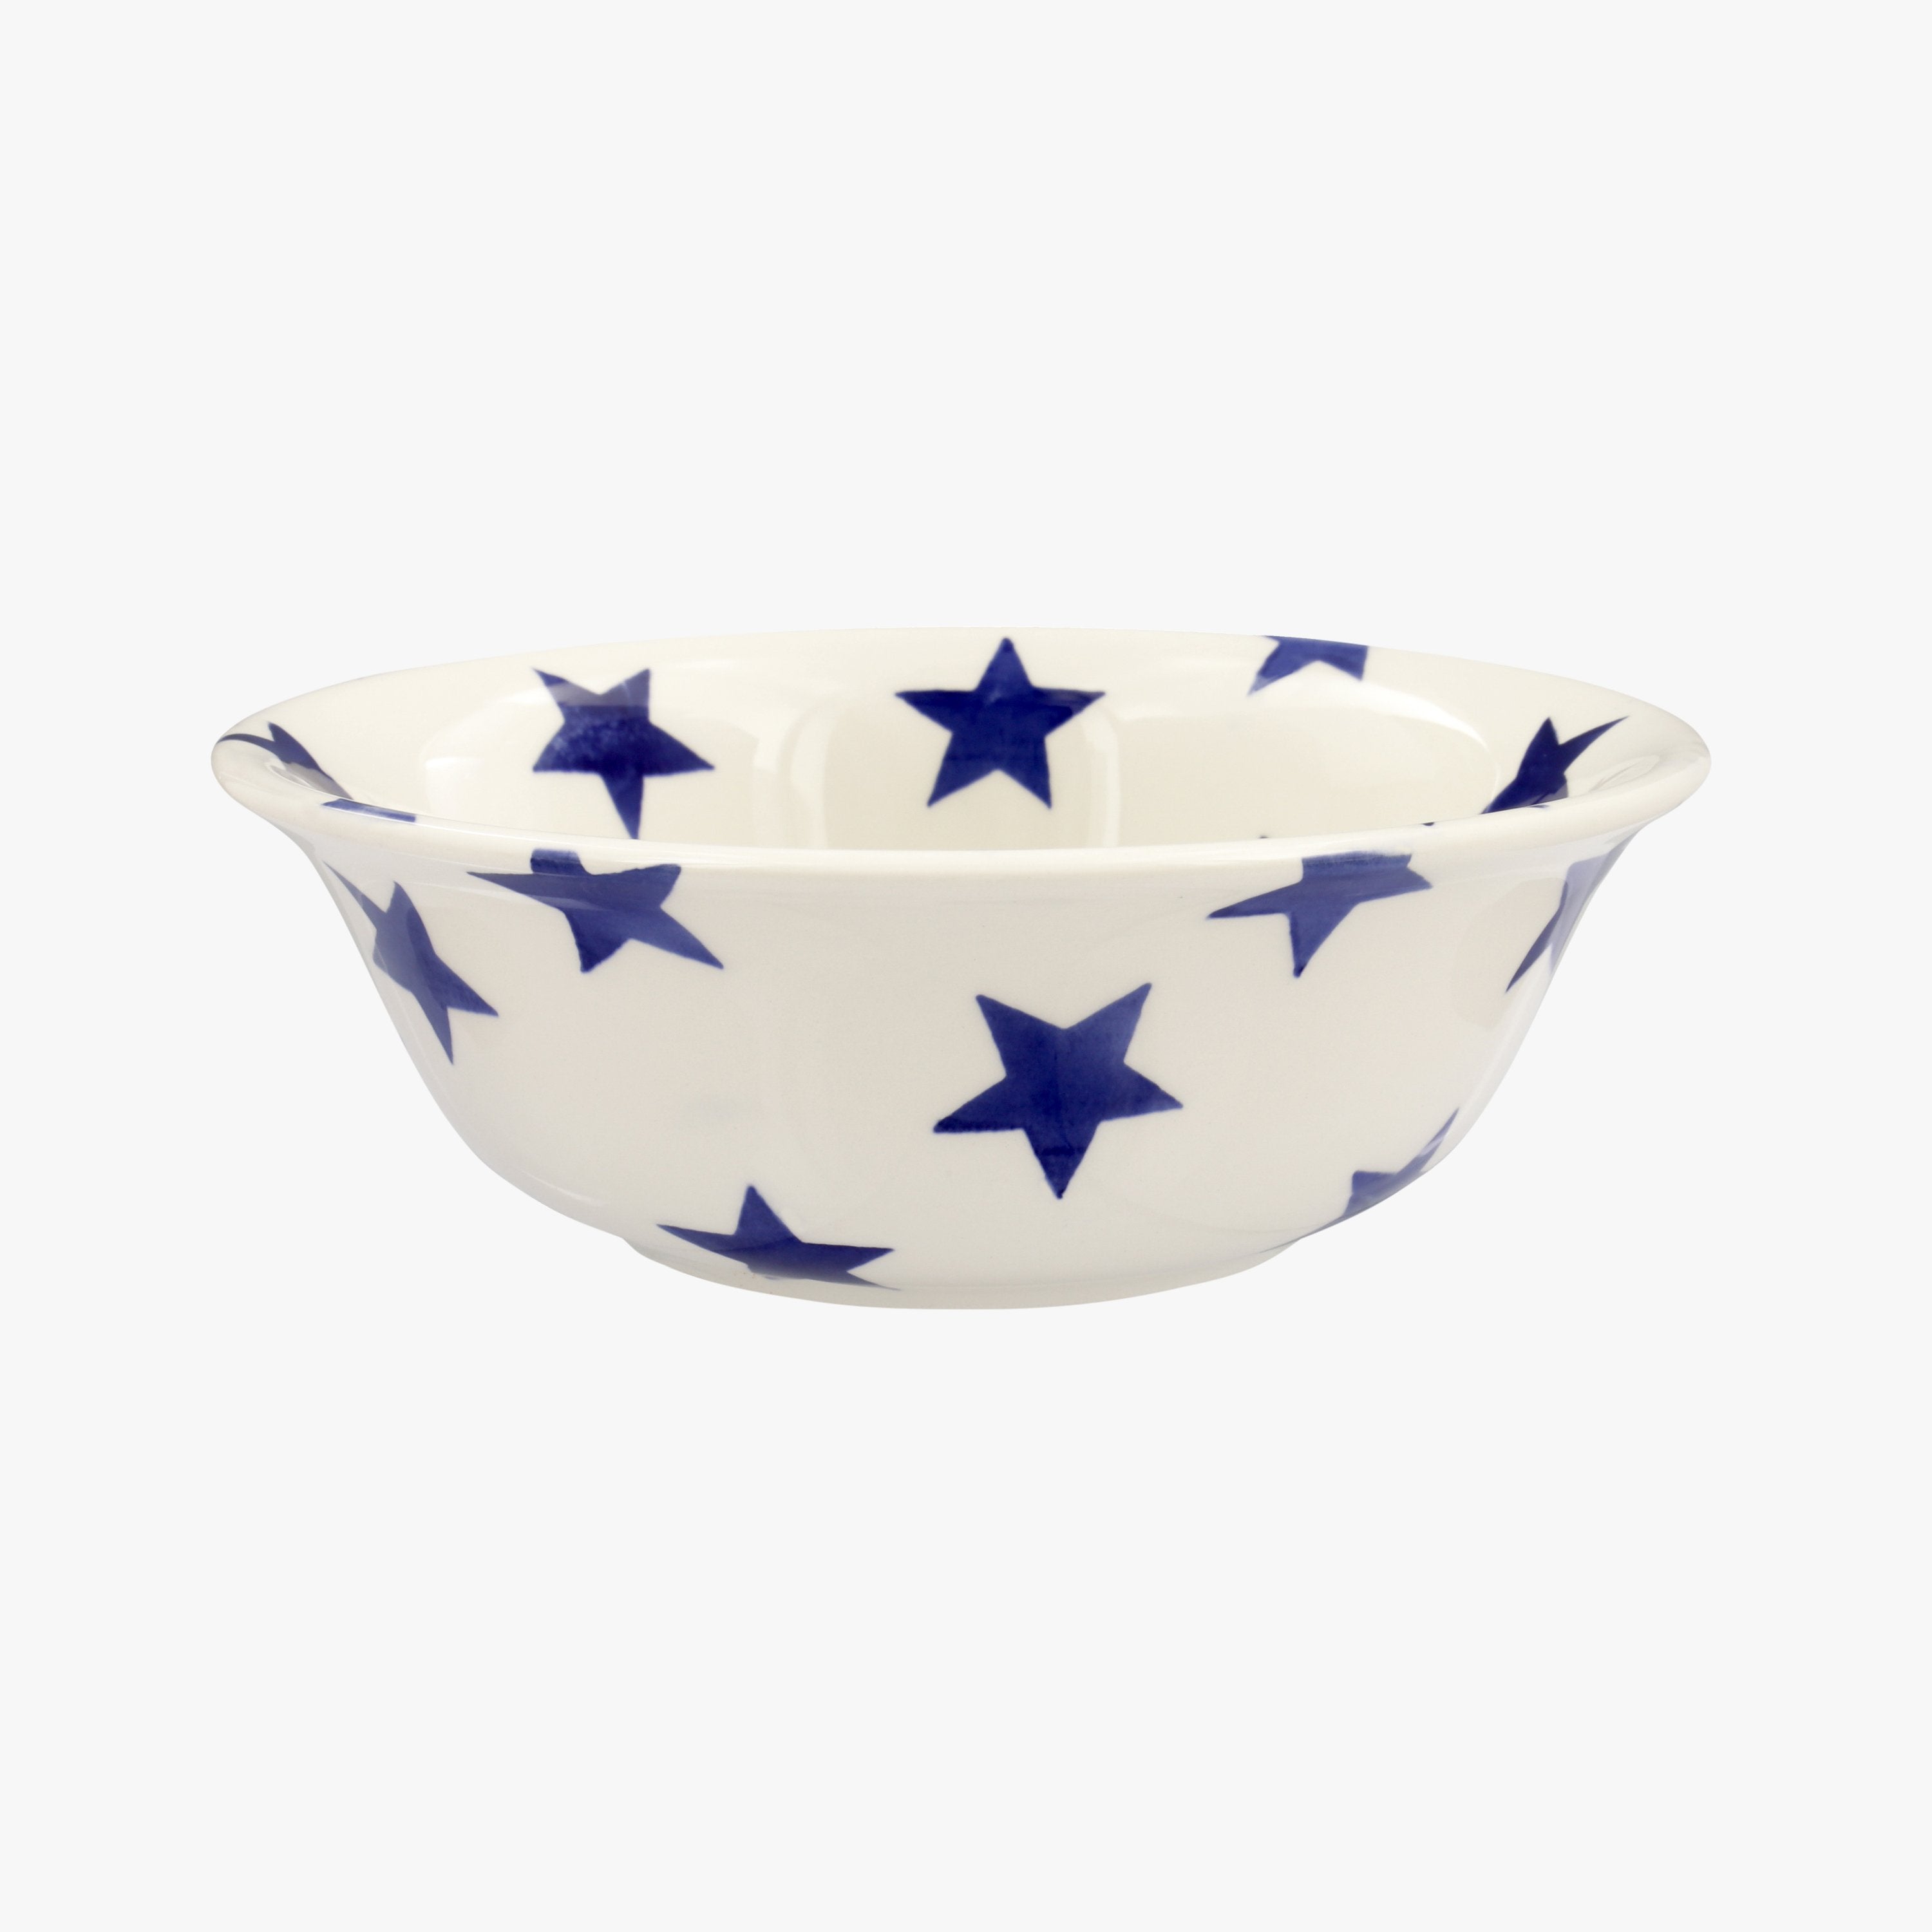 Vintage Emma Bridgewater Speckled Hen Cereal Bowl